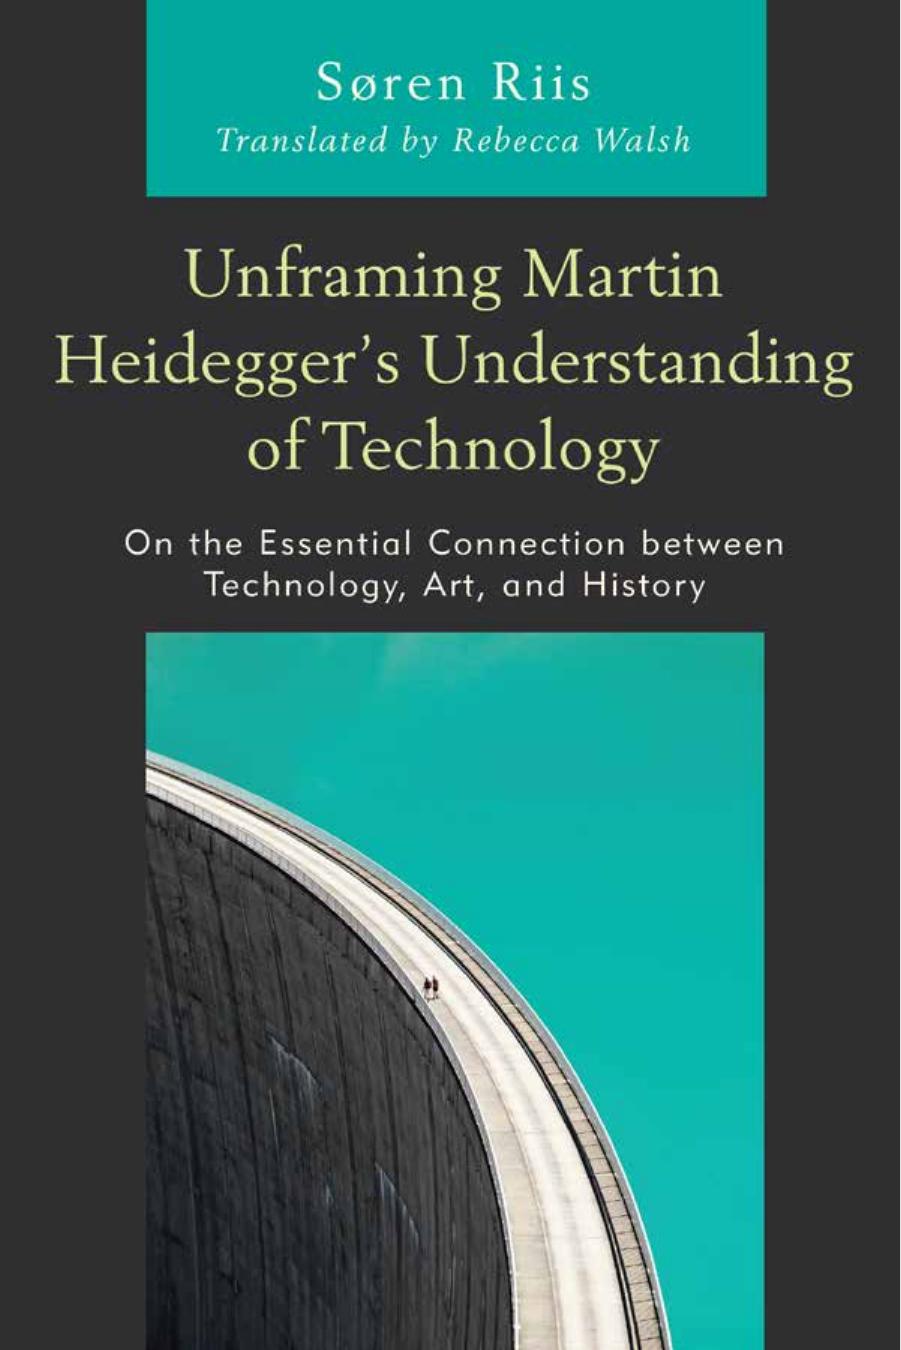 Unframing Martin Heidegger’s Understanding of Technology